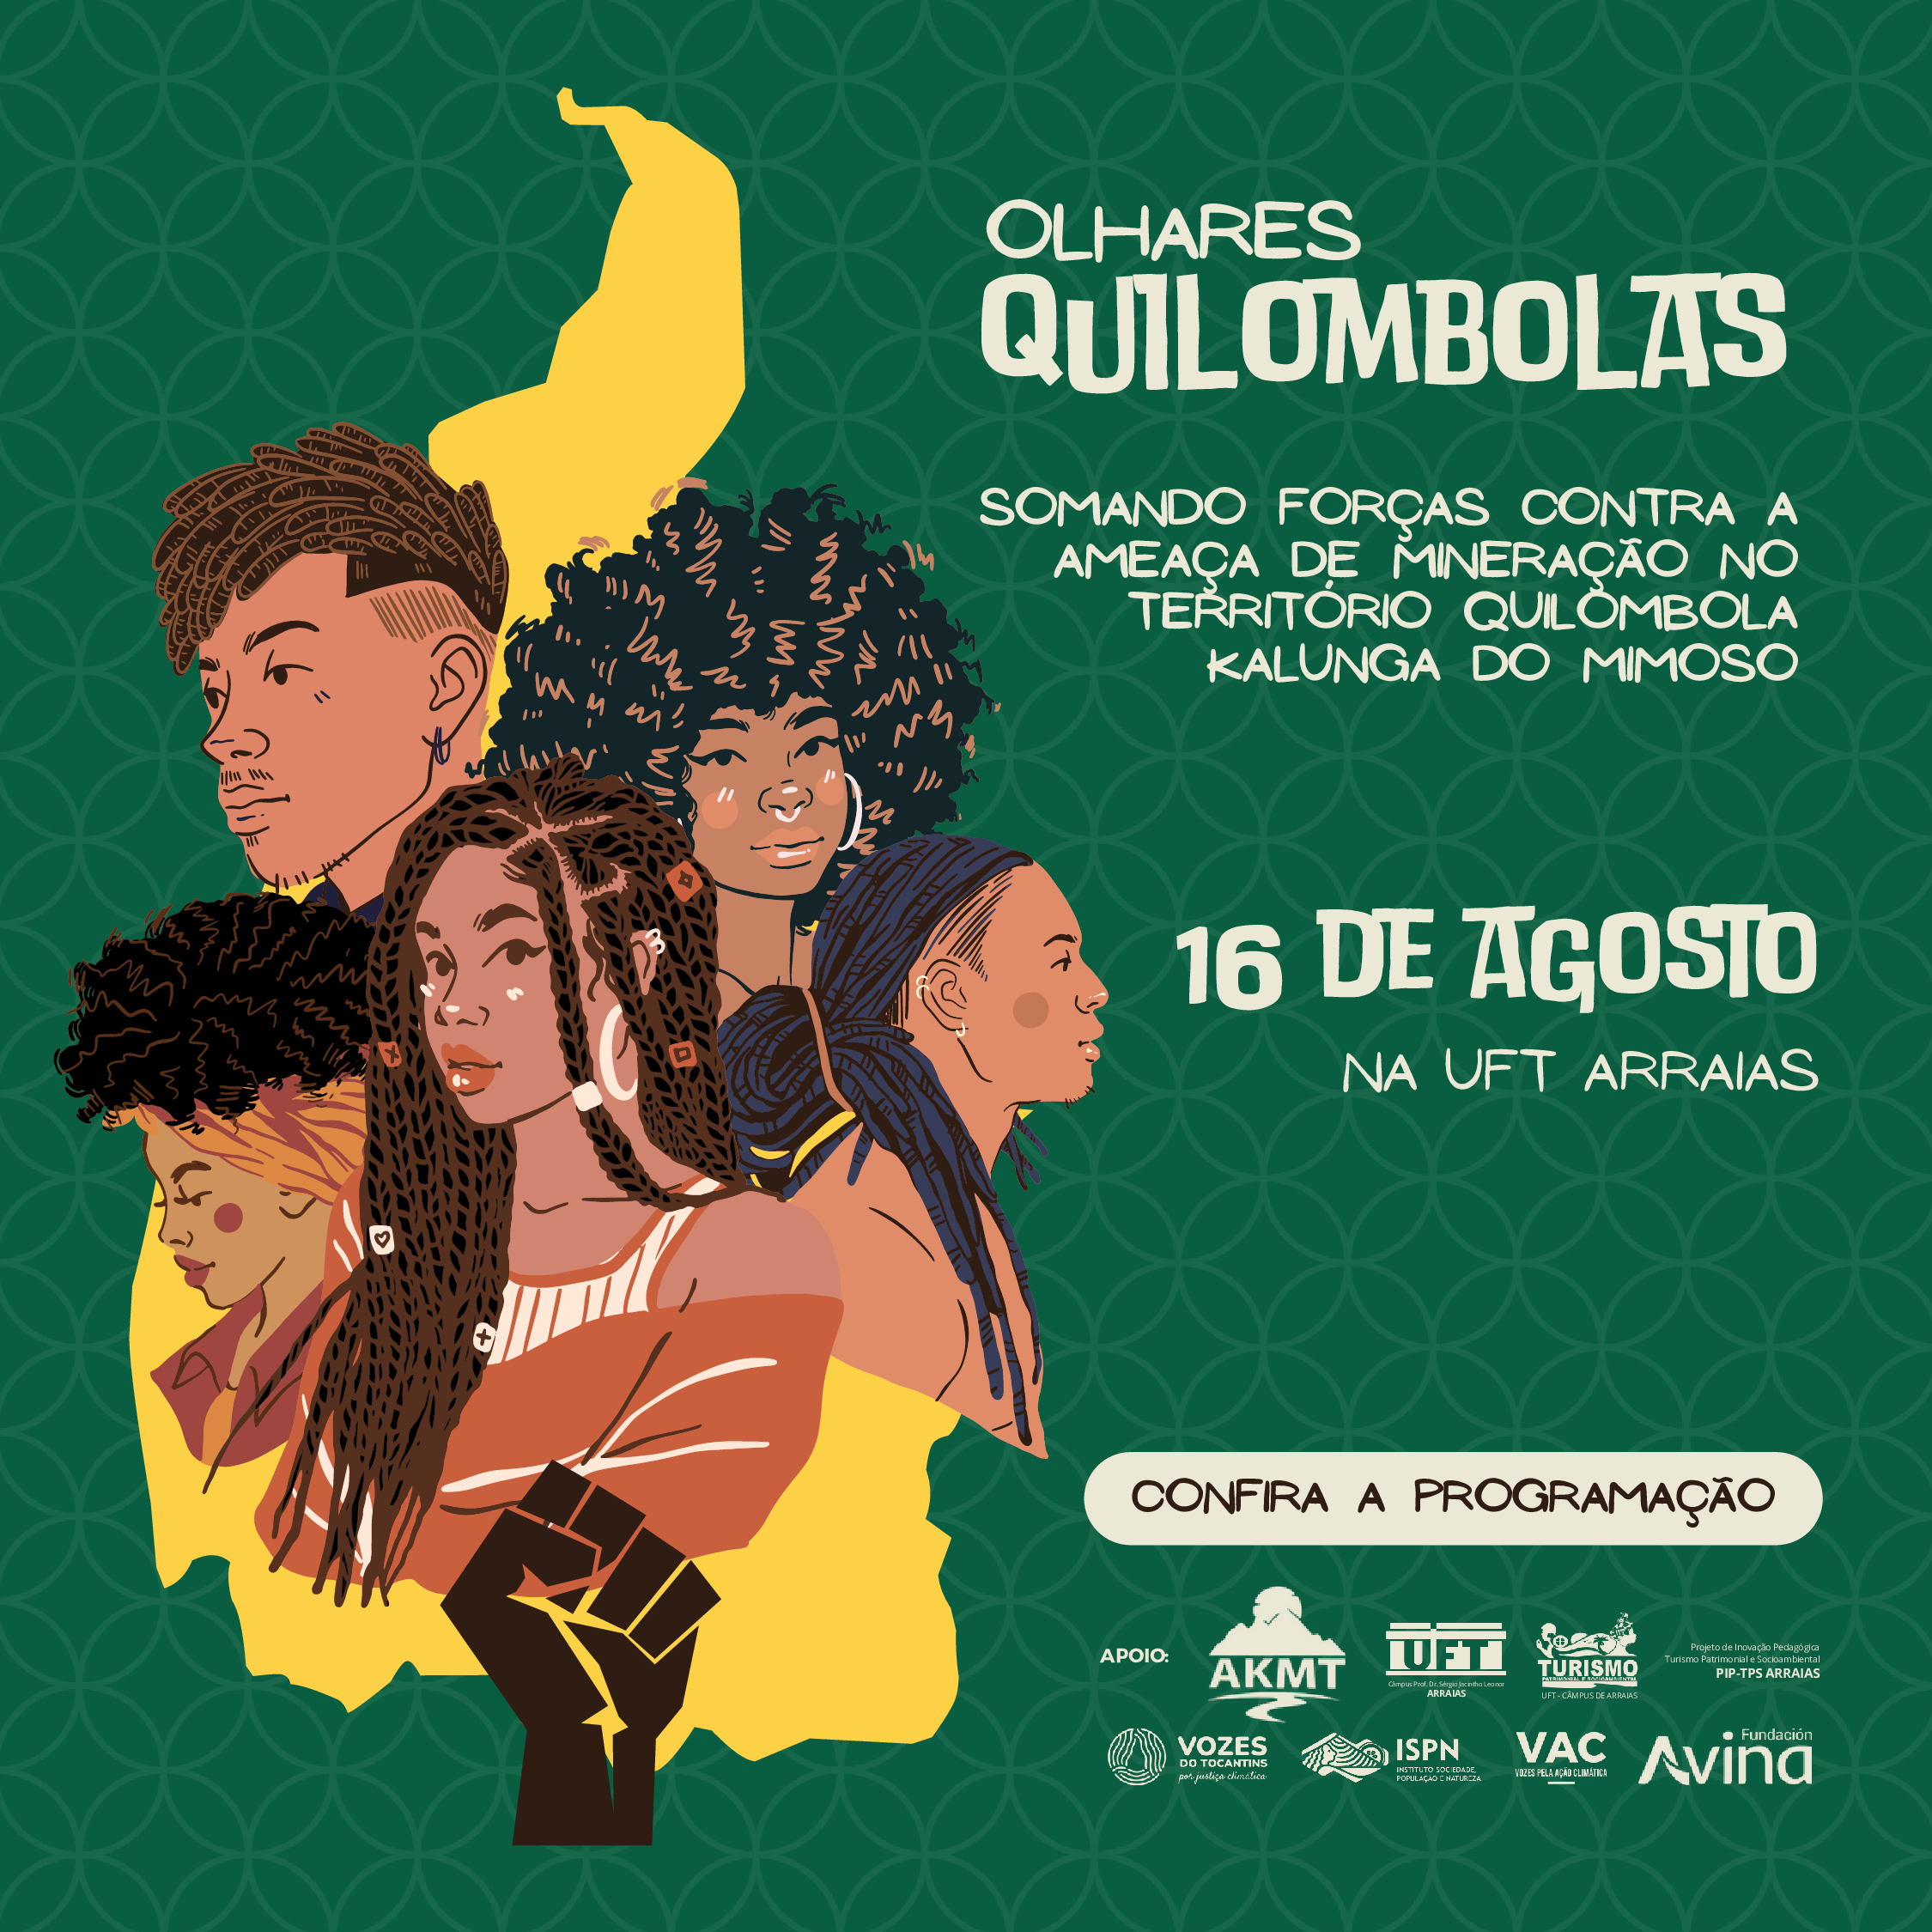 Câmpus da UFT em Arraias sediará evento do projeto “Olhares Quilombolas” para discutir a mineração em territórios quilombolas